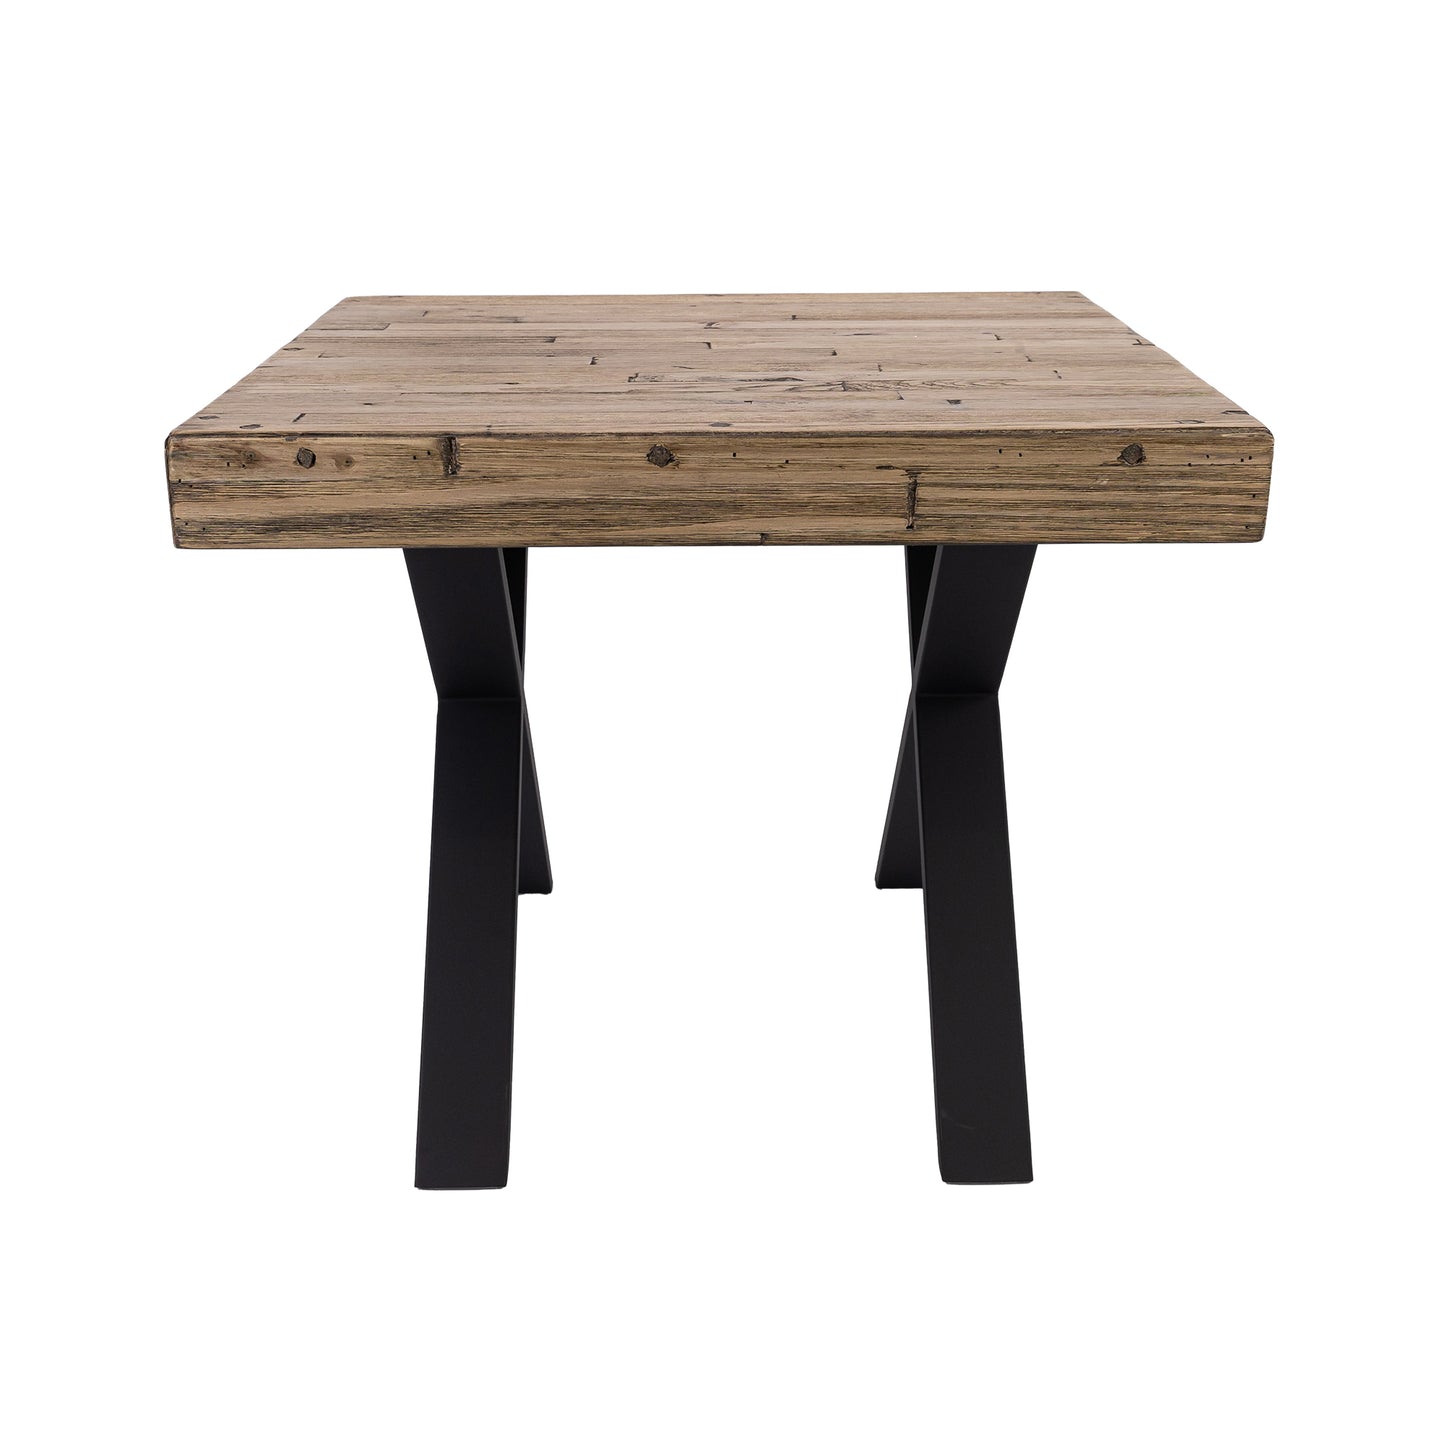 Anika Laminated Solid Pine Top Metal Leg Side Table 60cm  - Smoke